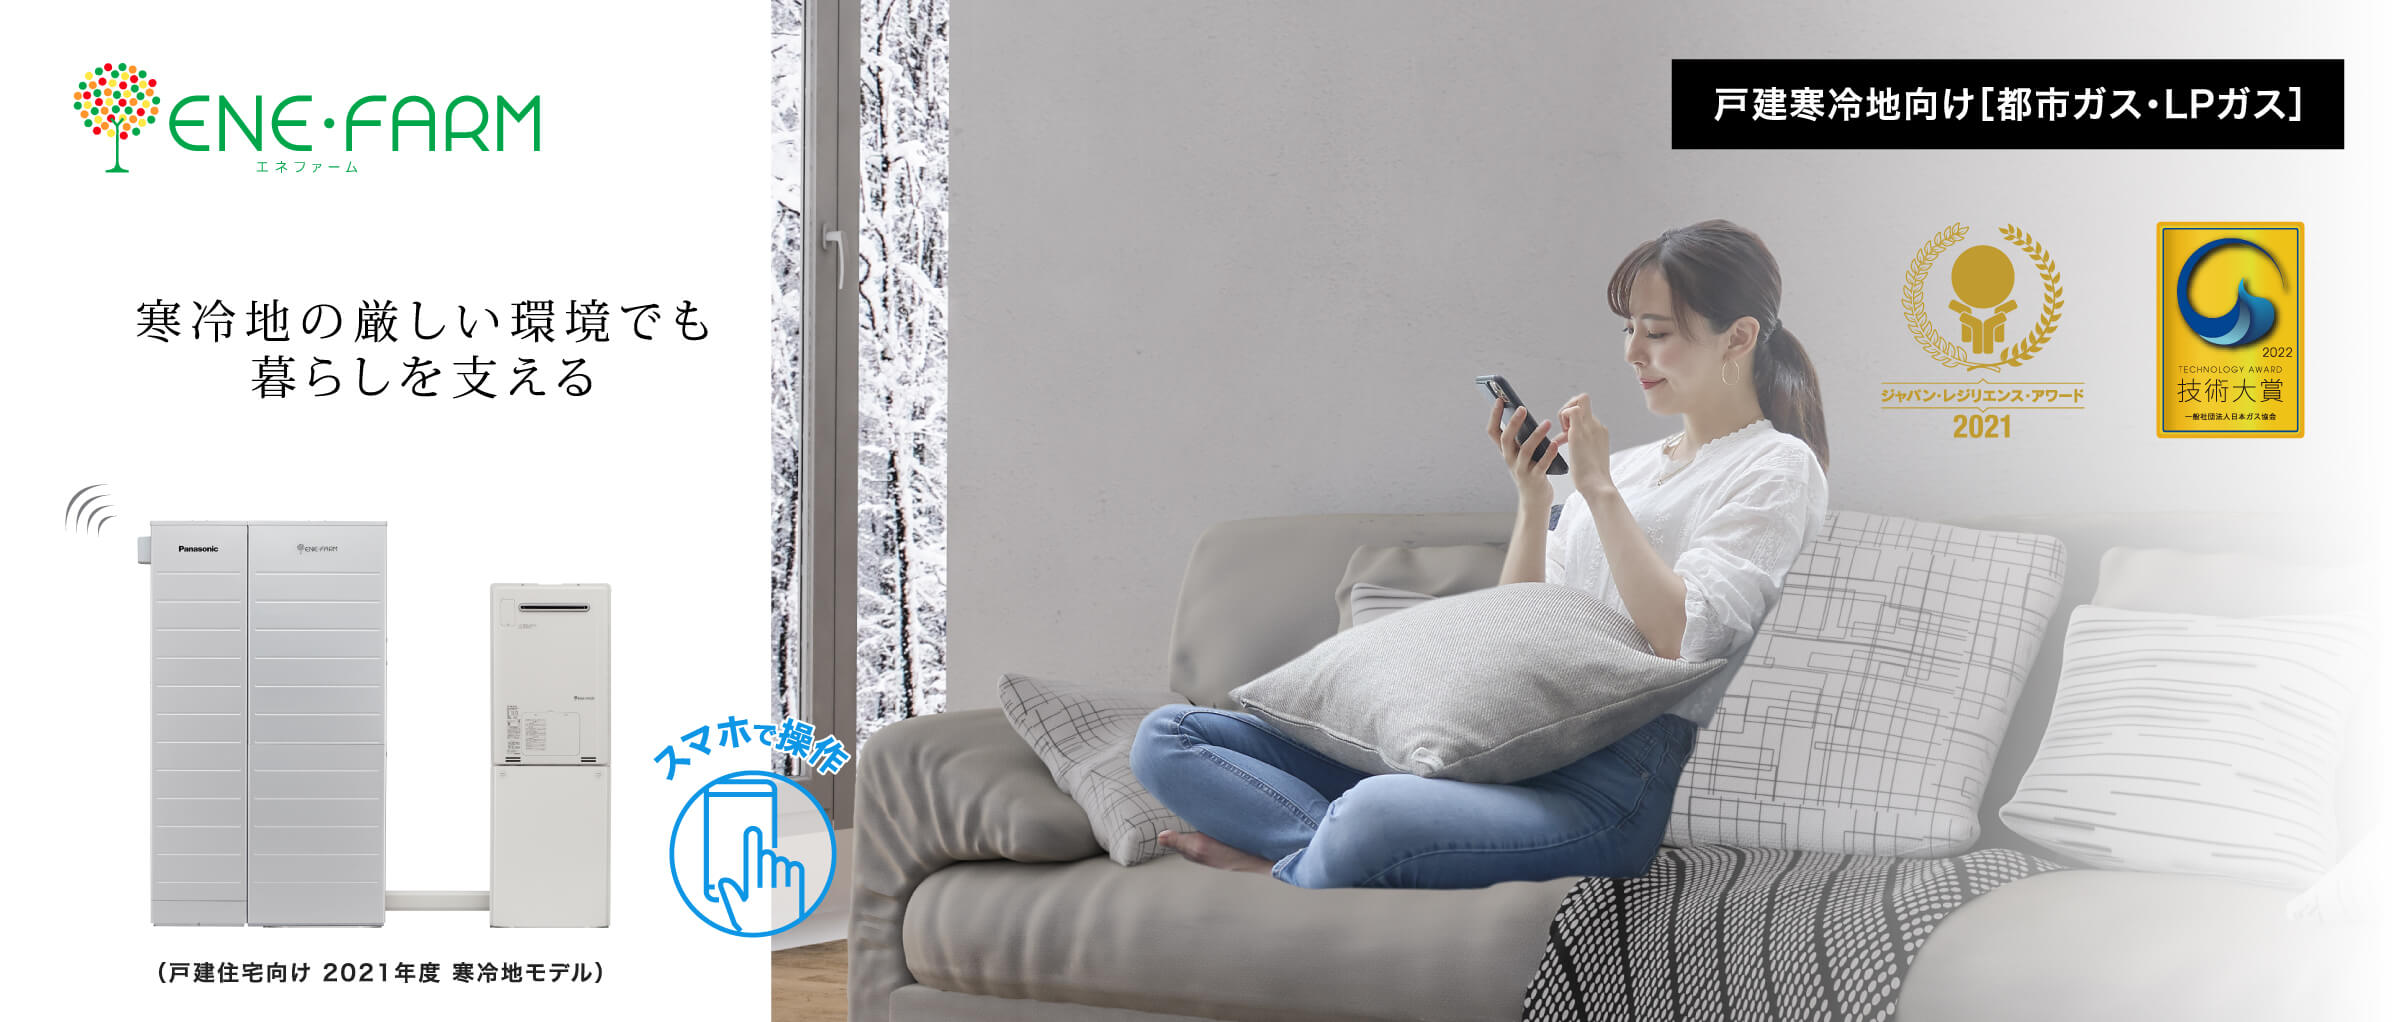 戸建寒冷地向け エネファームご紹介ページのメインビジュアルです。ジャパン・レジリエンス・アワード 2021 最優秀賞を受賞した2021年度モデルの製品画像とソファーの上でスマートフォンの操作をする女性の画像です。